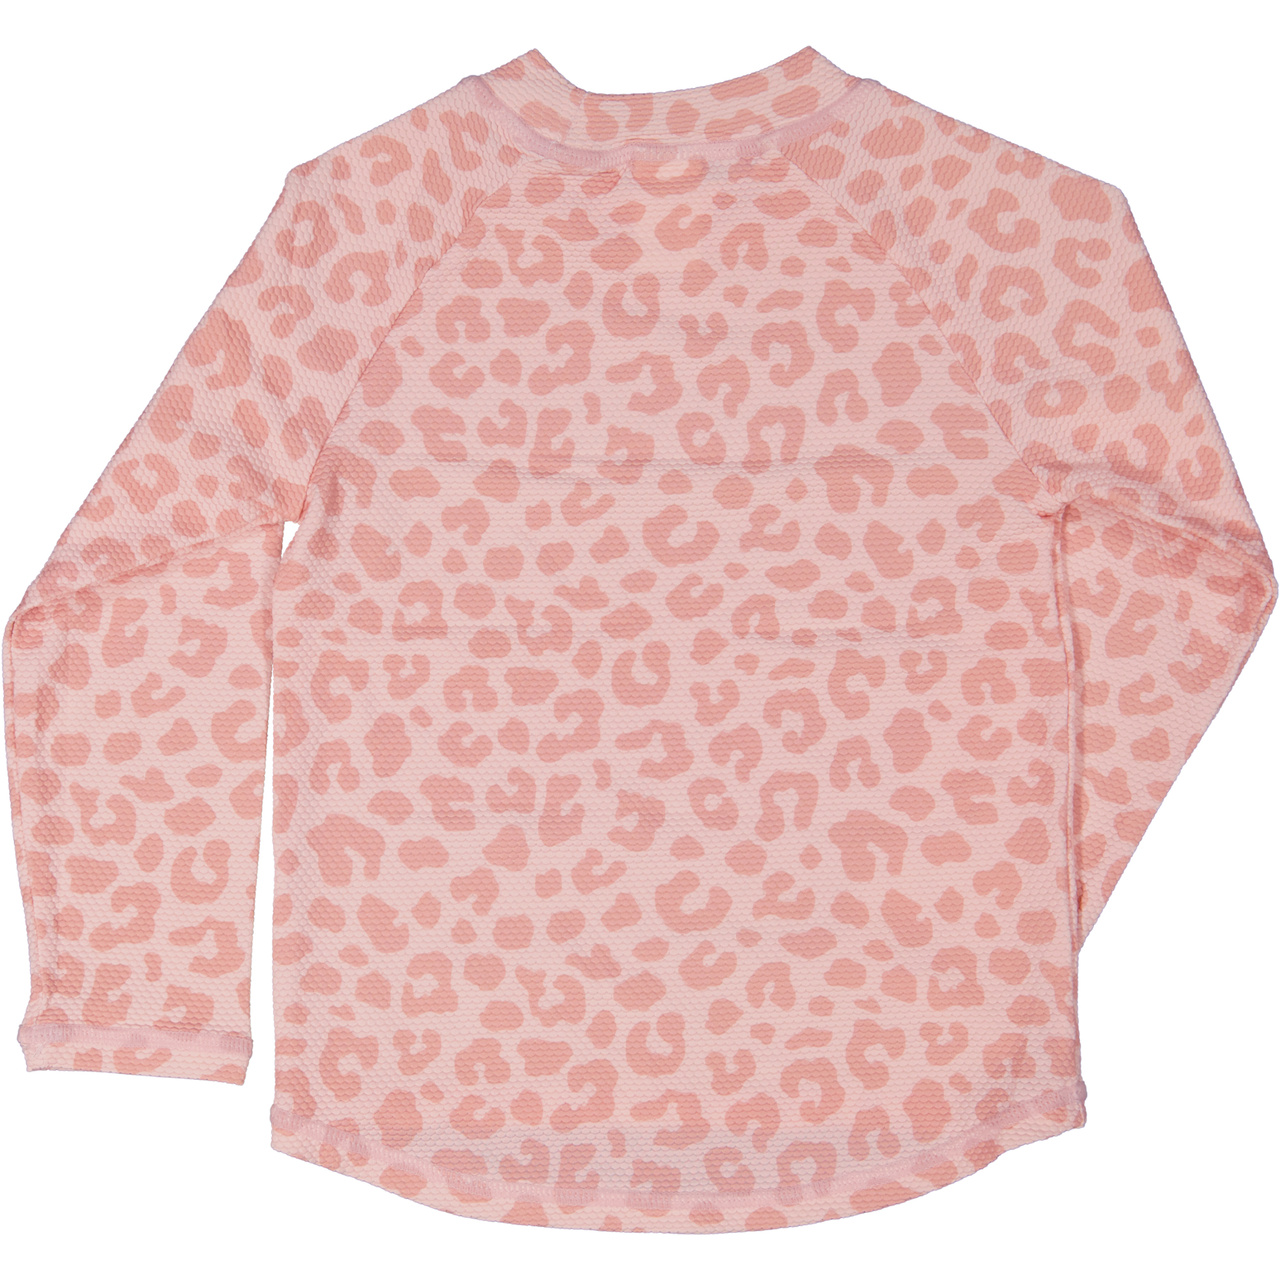 UV-L.S sweater Pink Leo  74/80